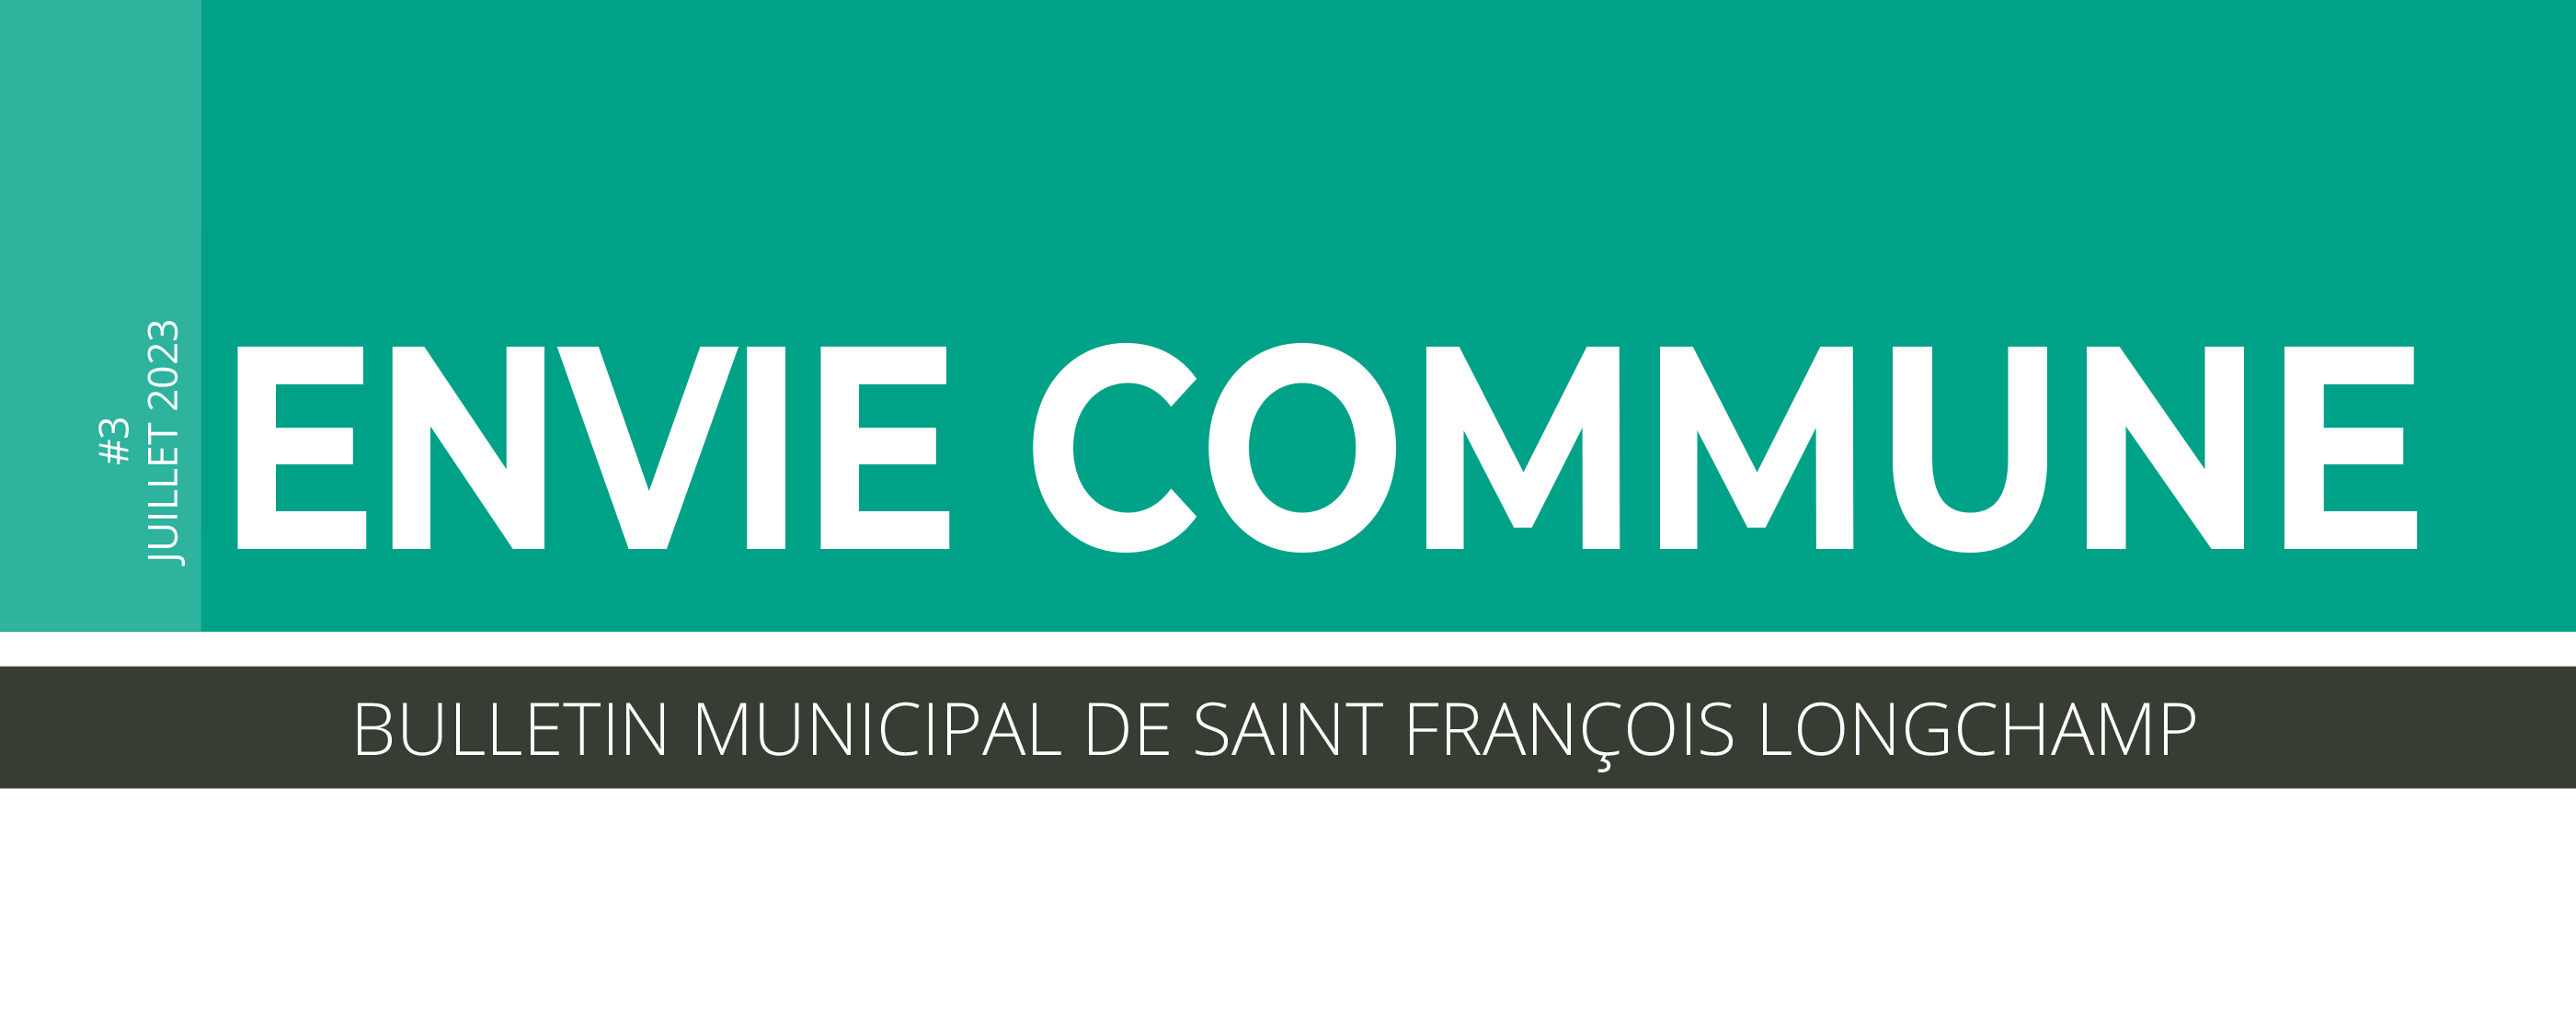 Bulletin municipal de la commune de Saint-François-Longchamp